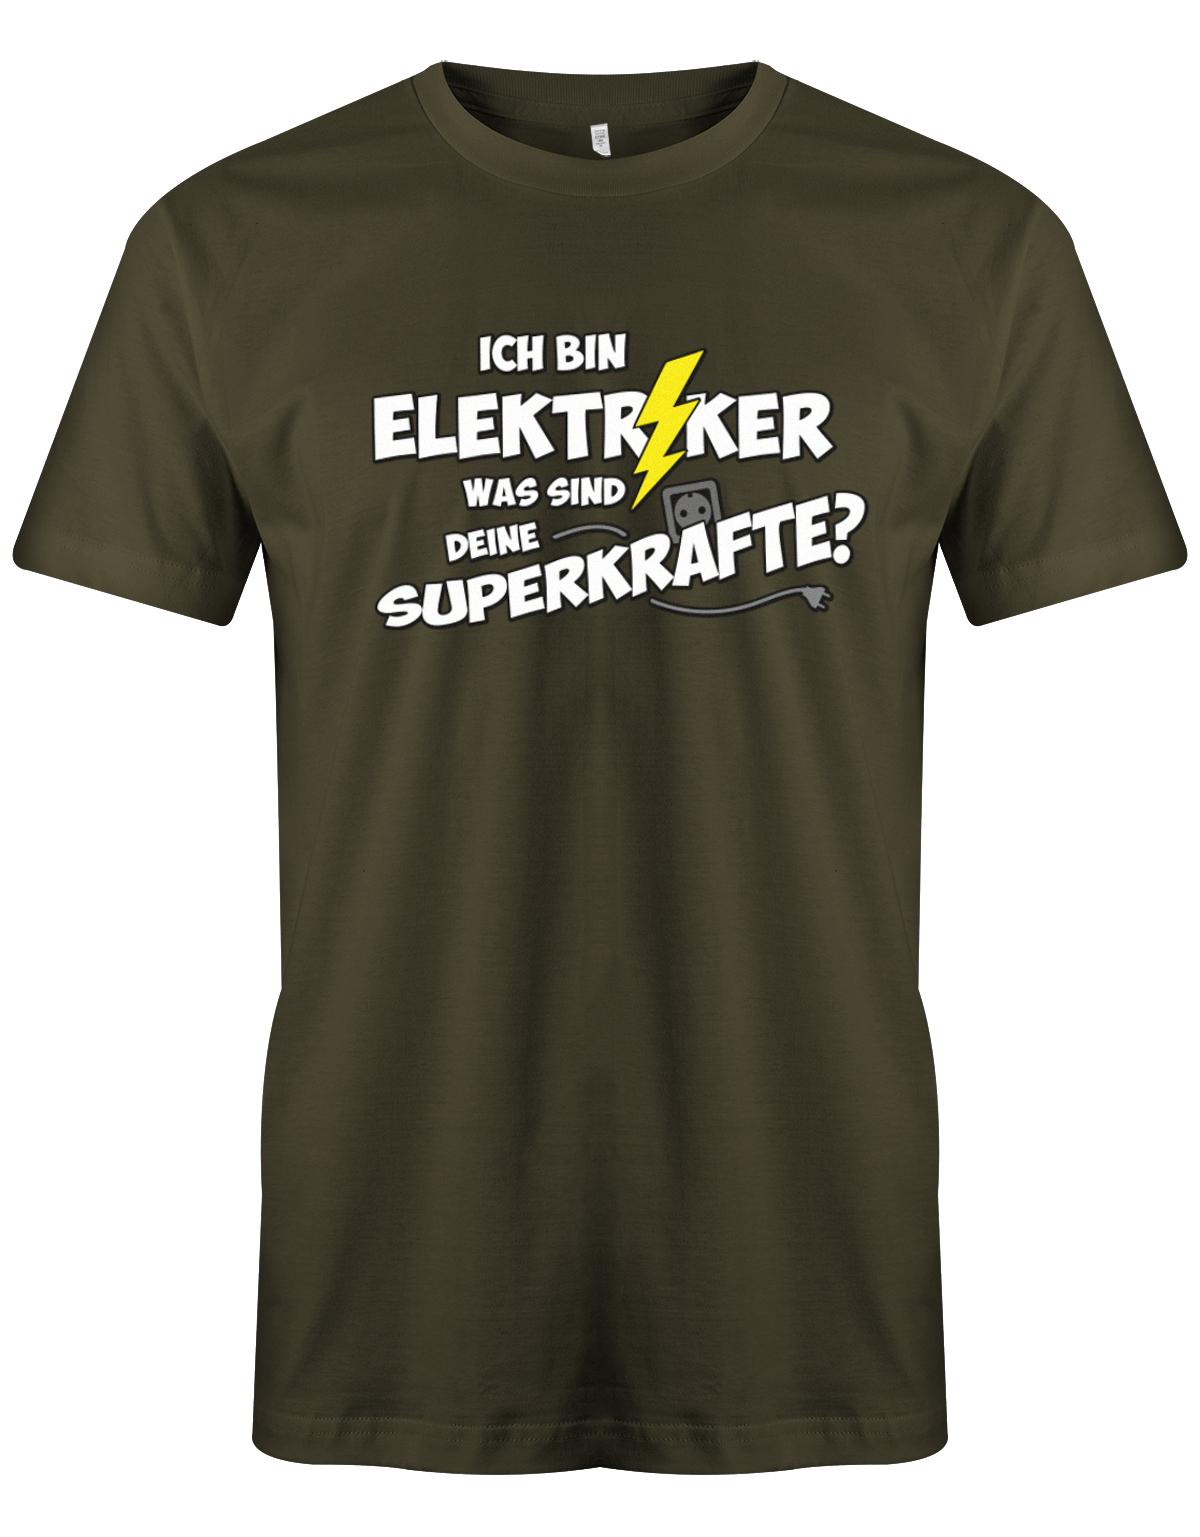 Elektriker Shirt - Ich bin Elektriker, was sind deine Superkräfte? Army